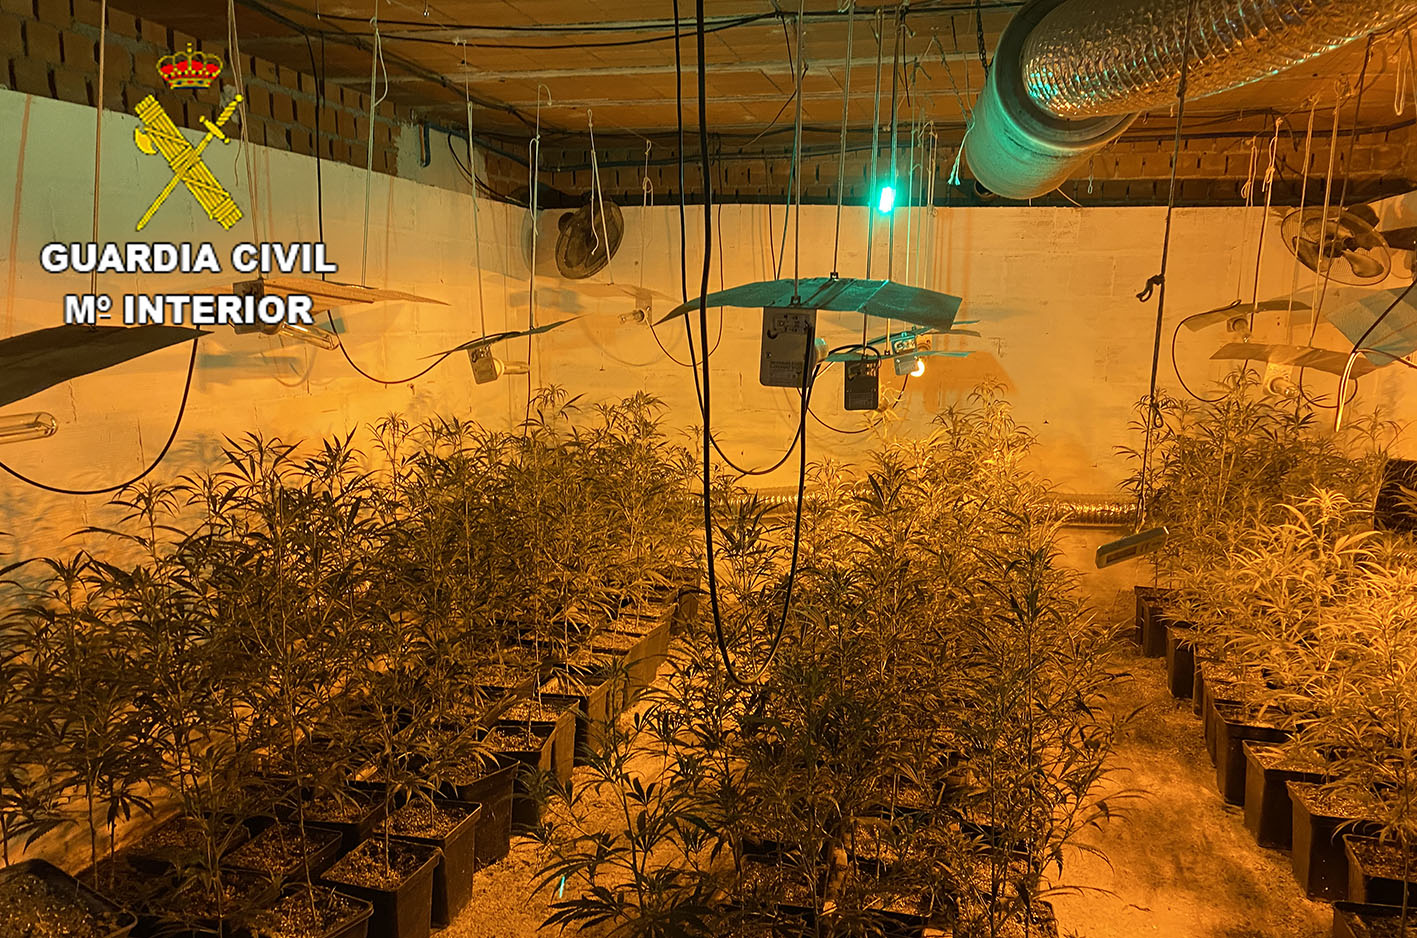 En el interior de la vivienda se encontraron con una plantación de marihuana.